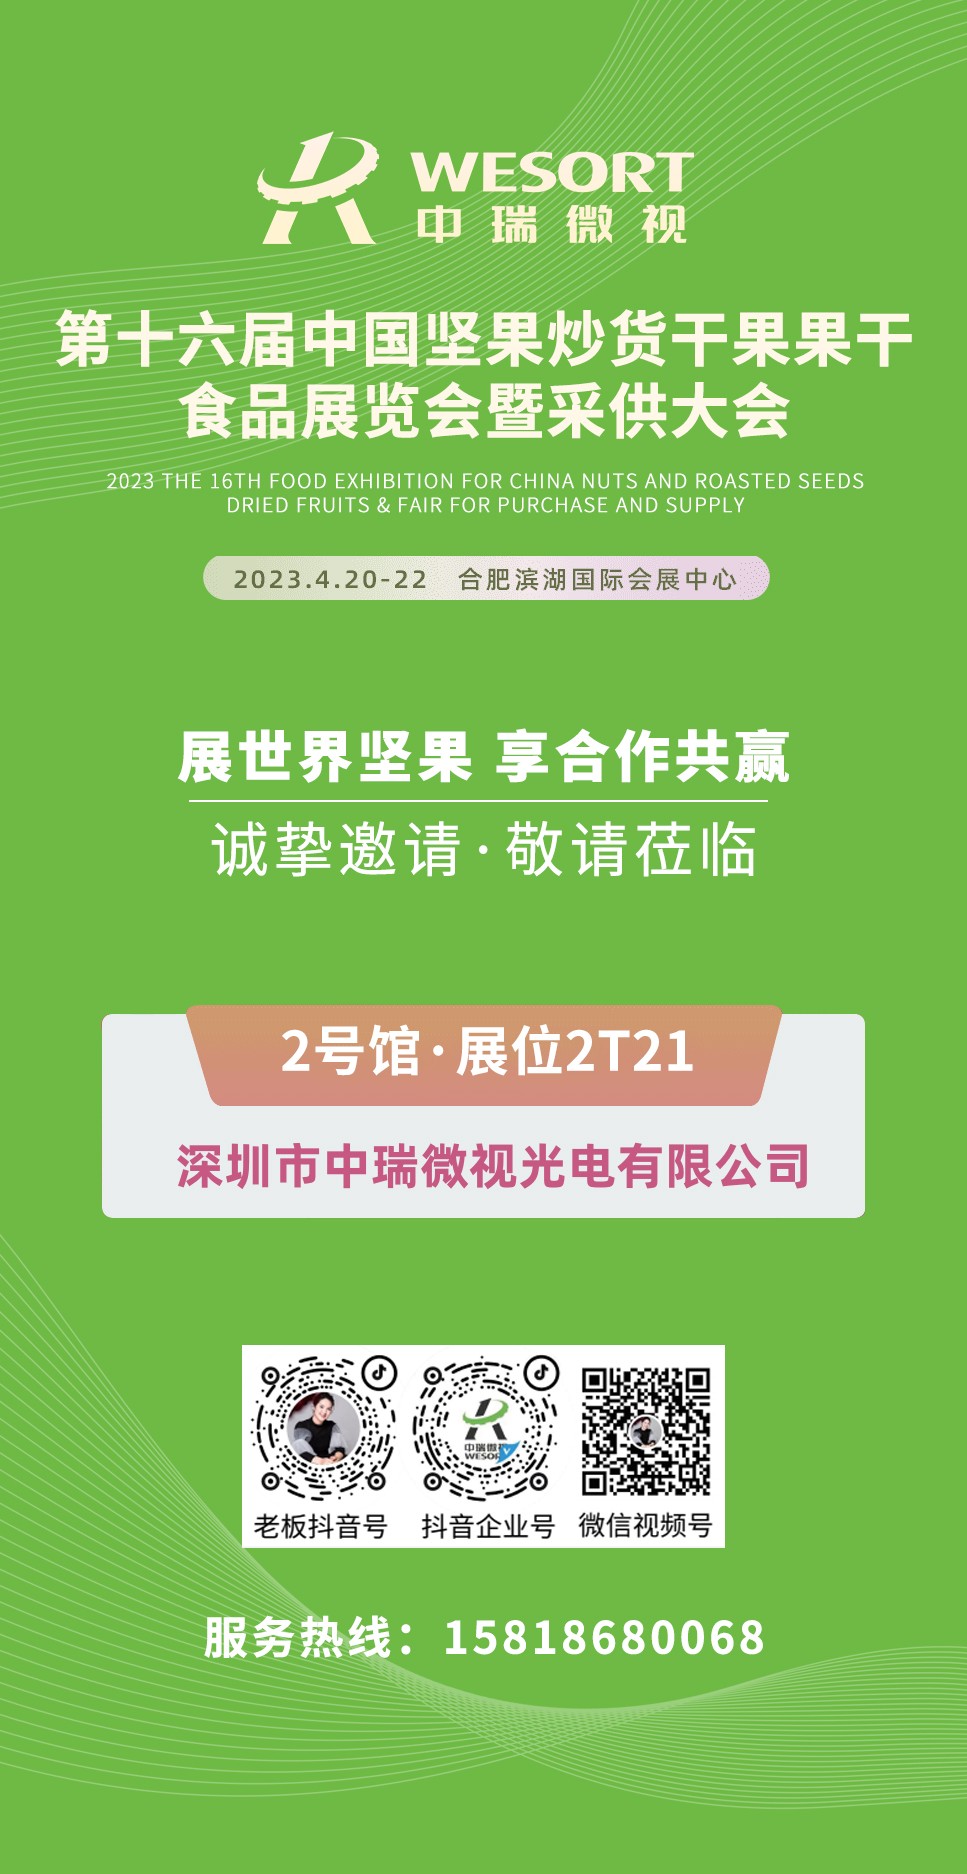 中瑞微视第十六届中国坚果炒货干果果干食品展览会暨采供大会